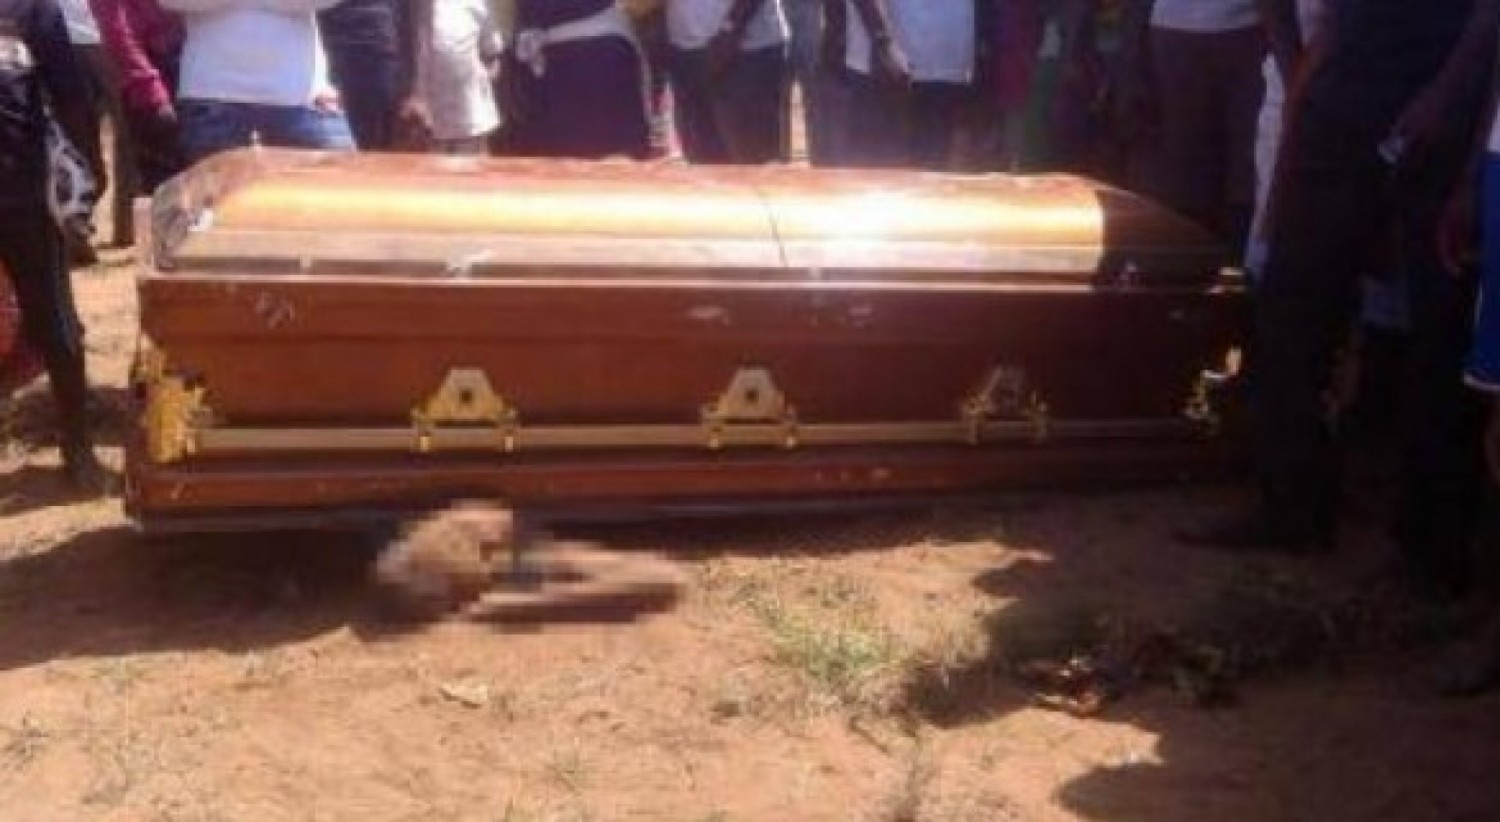 Côte d'Ivoire : Le cercueil d'un ex-directeur d'école désigne sa mère, son oncle et son frère comme ses meurtriers présumés